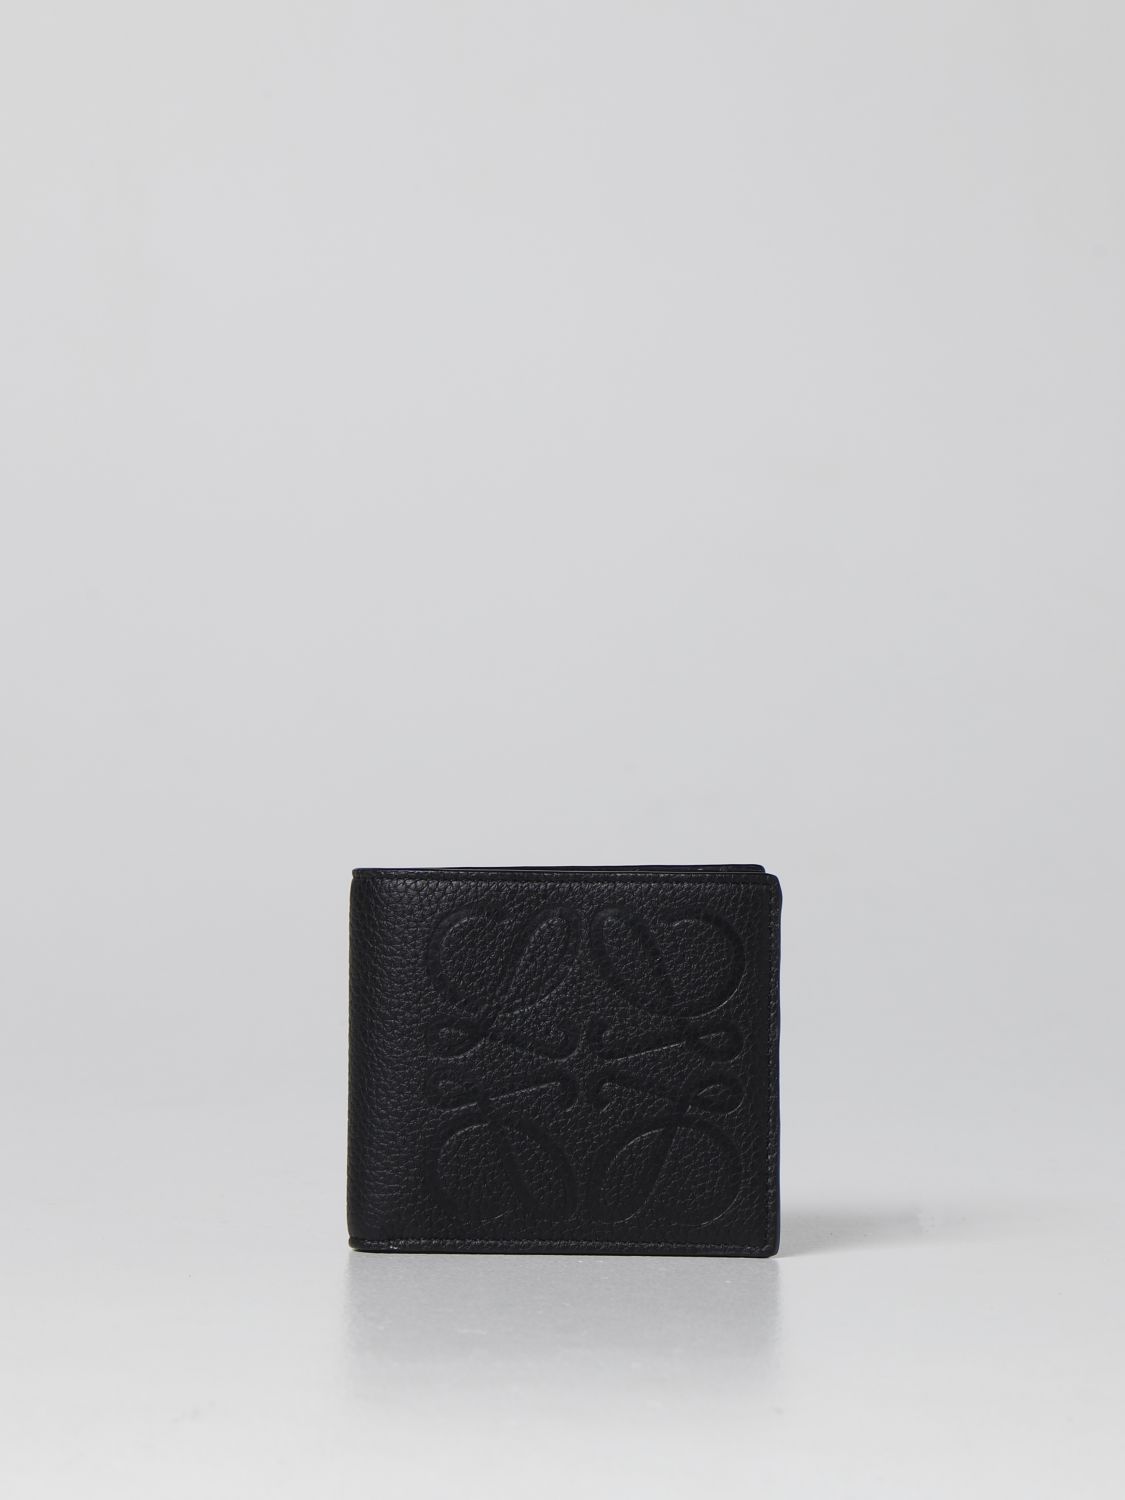 LOEWE: wallet for man - Black | Loewe wallet C500302X02 online on ...